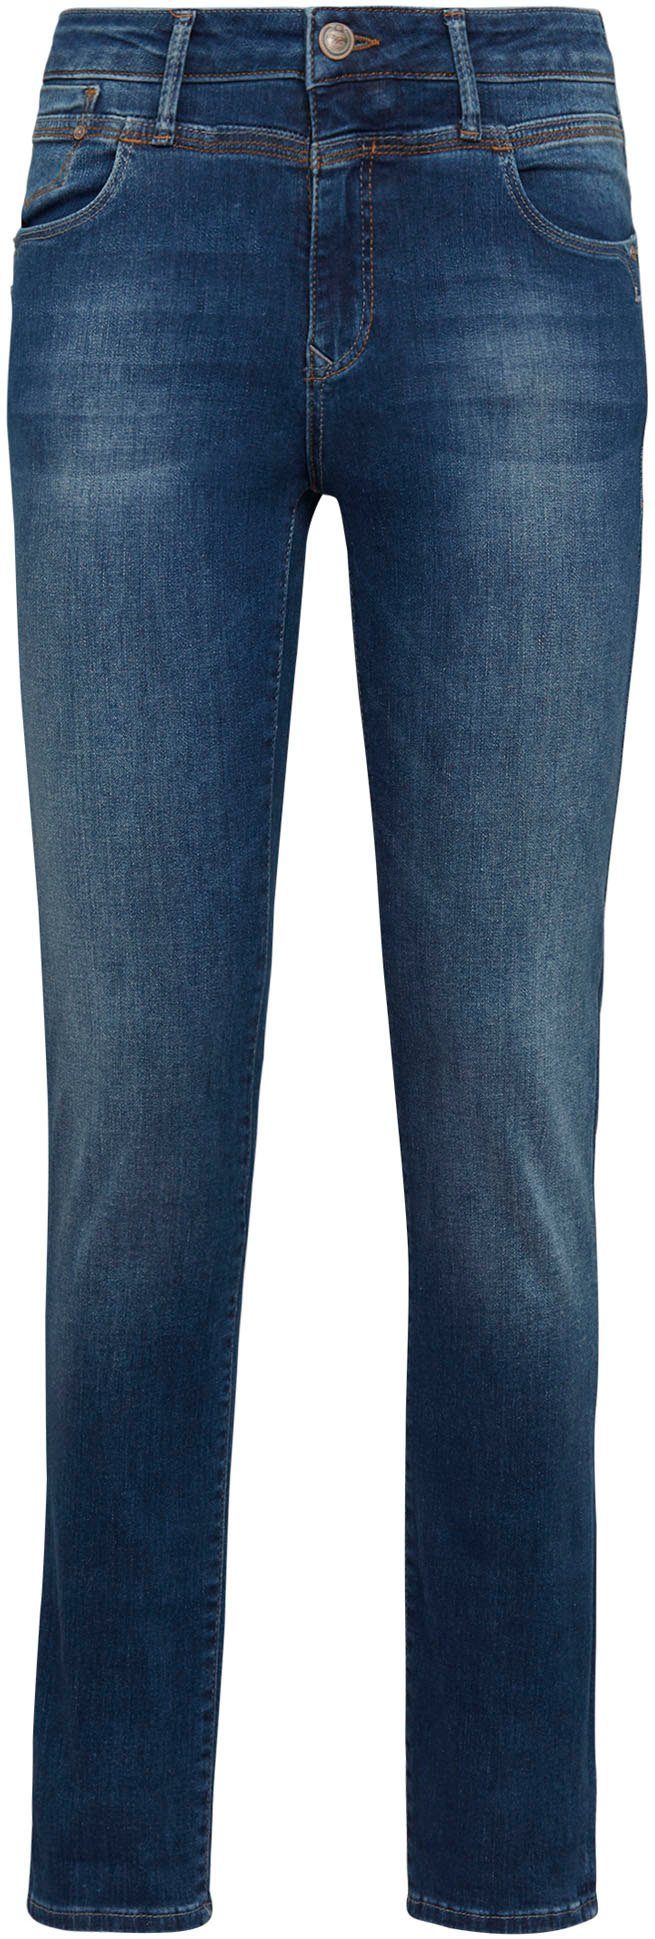 Mavi mit blue) Denimqualität hoher fit angenehm memory (mid SOPHIE-MA Formstabilität aus deep weicher Slim-fit-Jeans